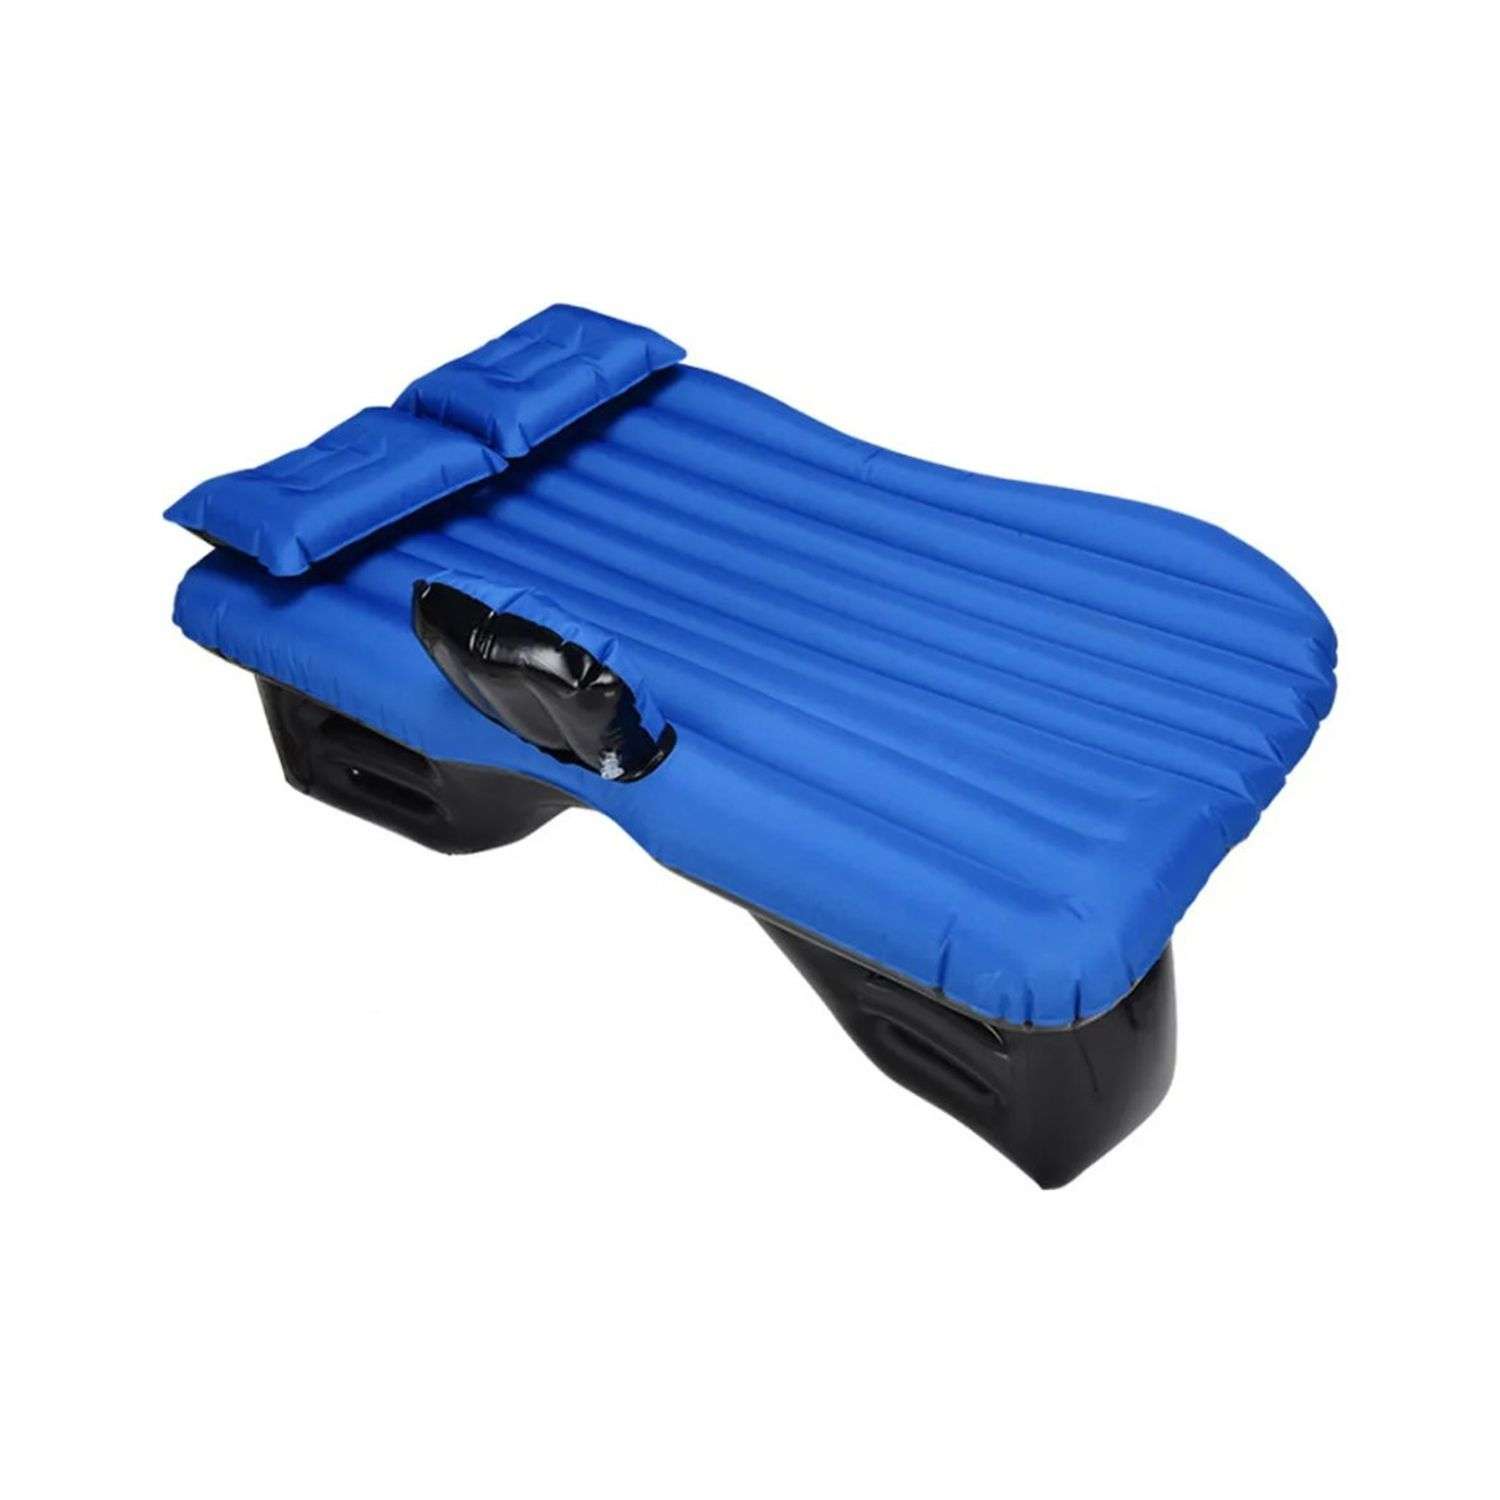 Надувной матрас Uniglodis для автомобиля синий - фото 1